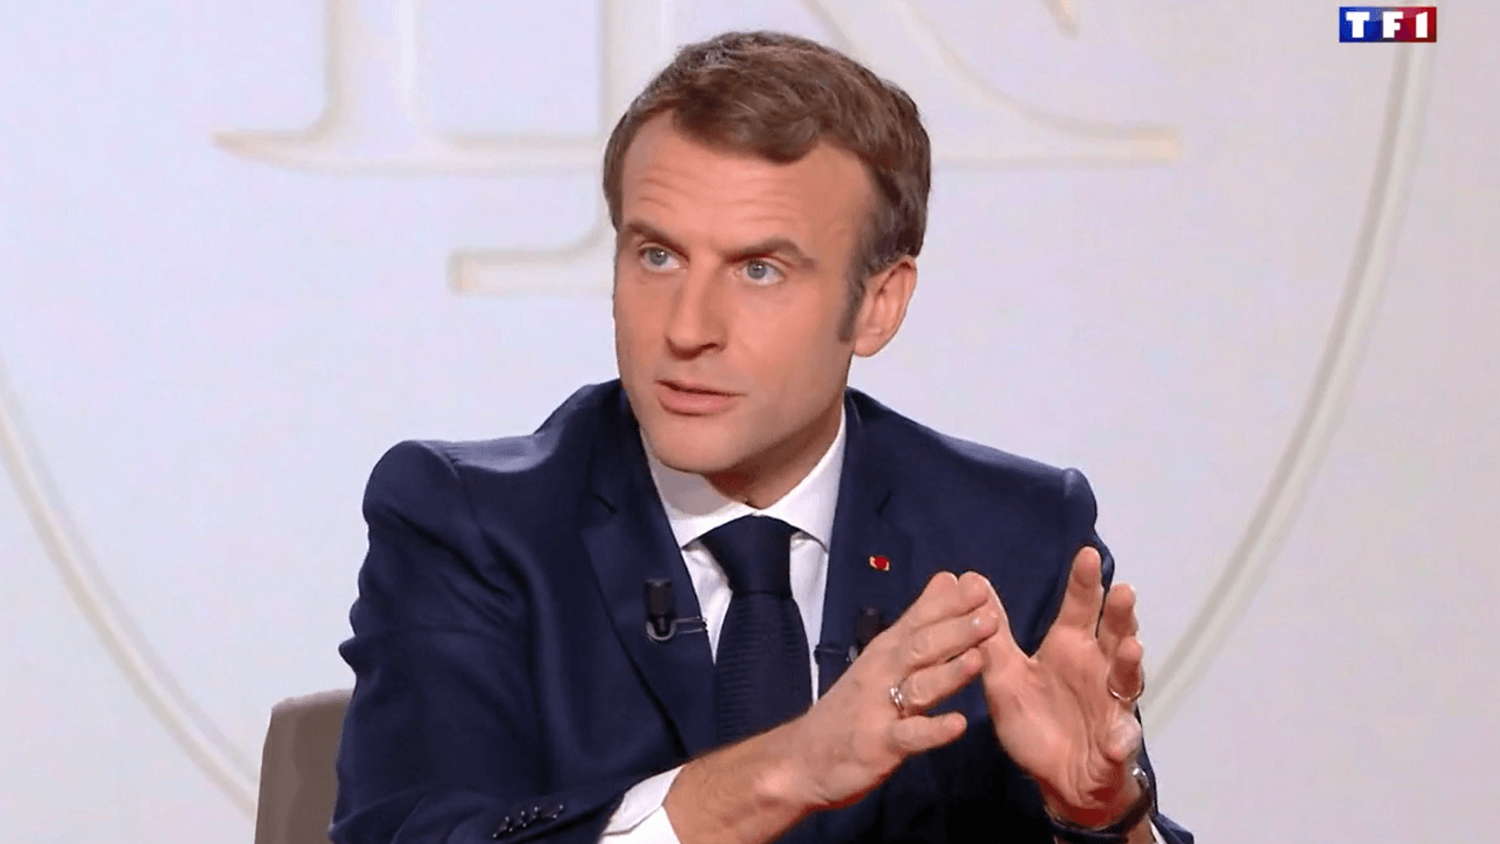 L'investiture d'Emmanuel Macron se déroulera samedi à l'Élysée